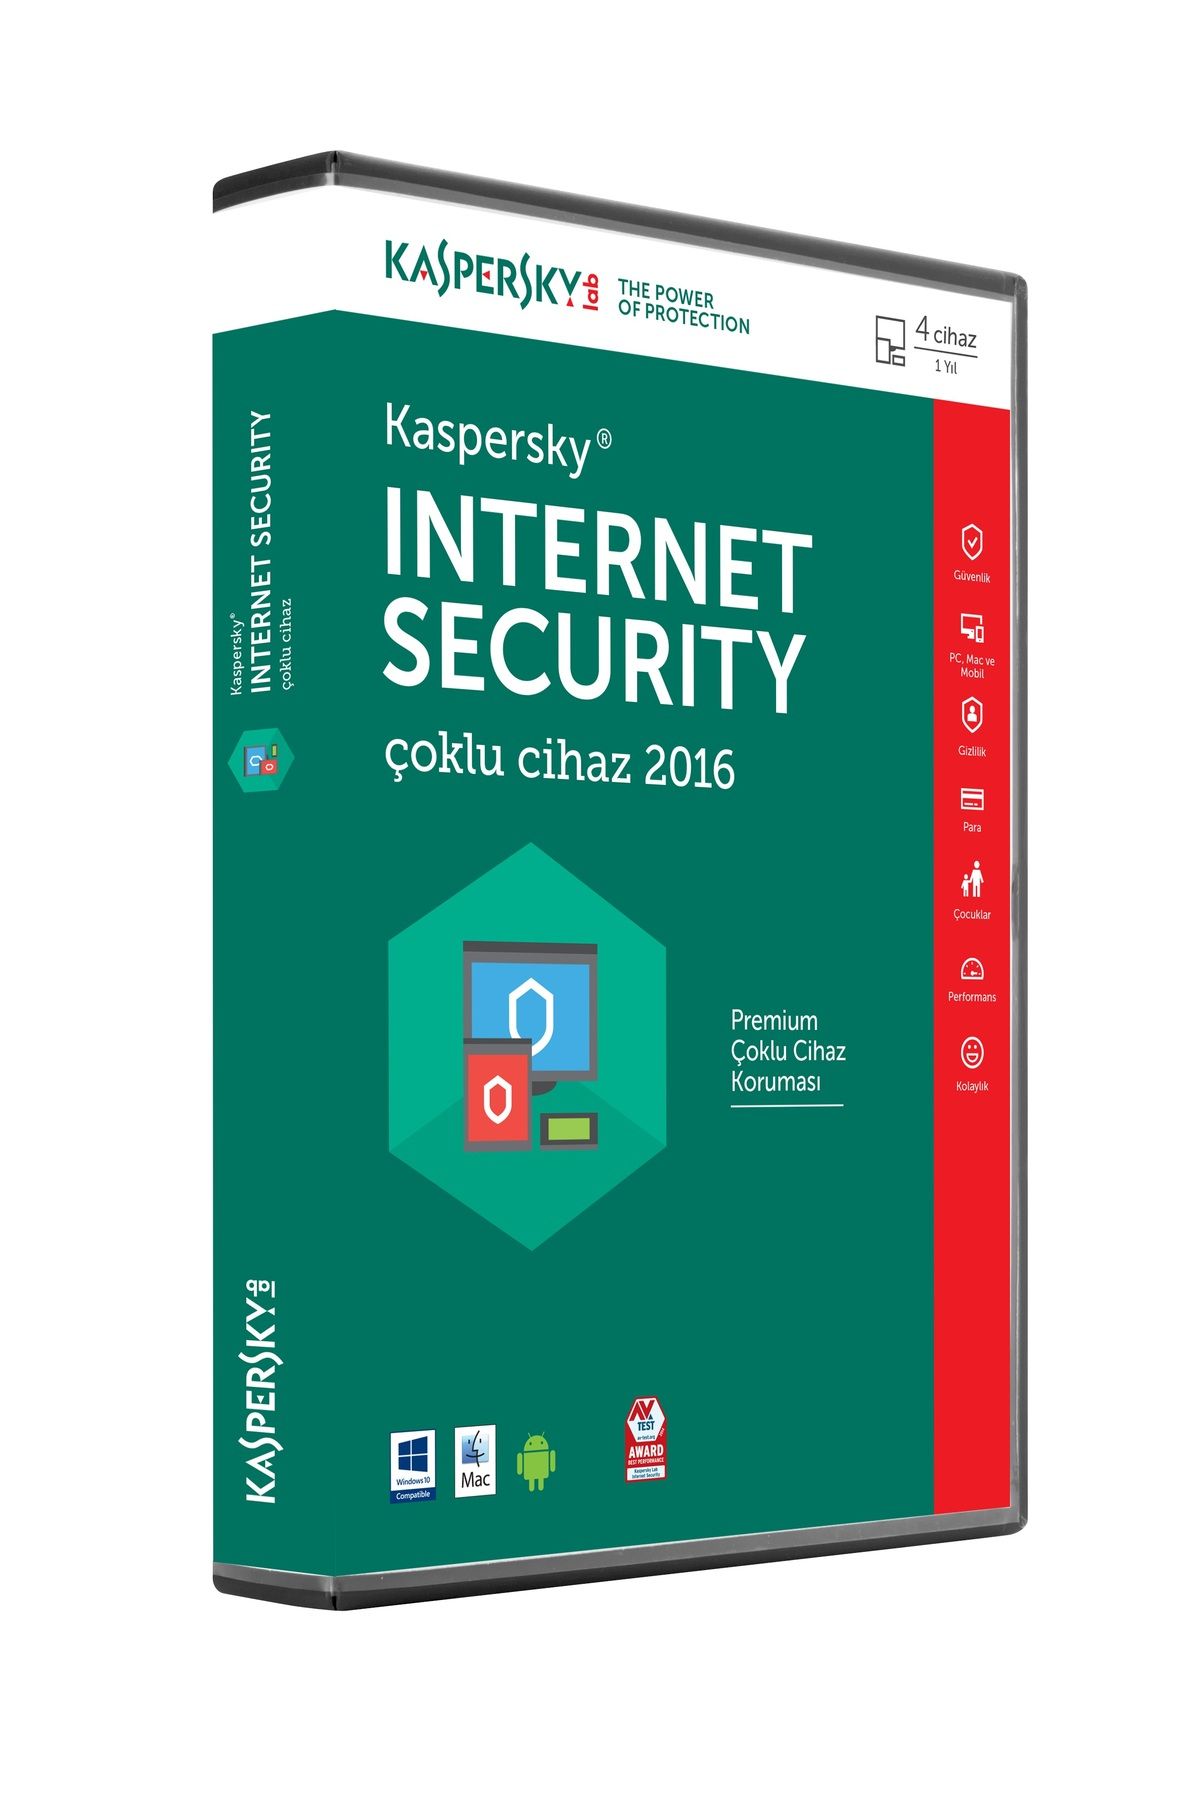 Kaspersky INTERNET SECURTY 4 KULLANICILI  TR 1 YIL DVD